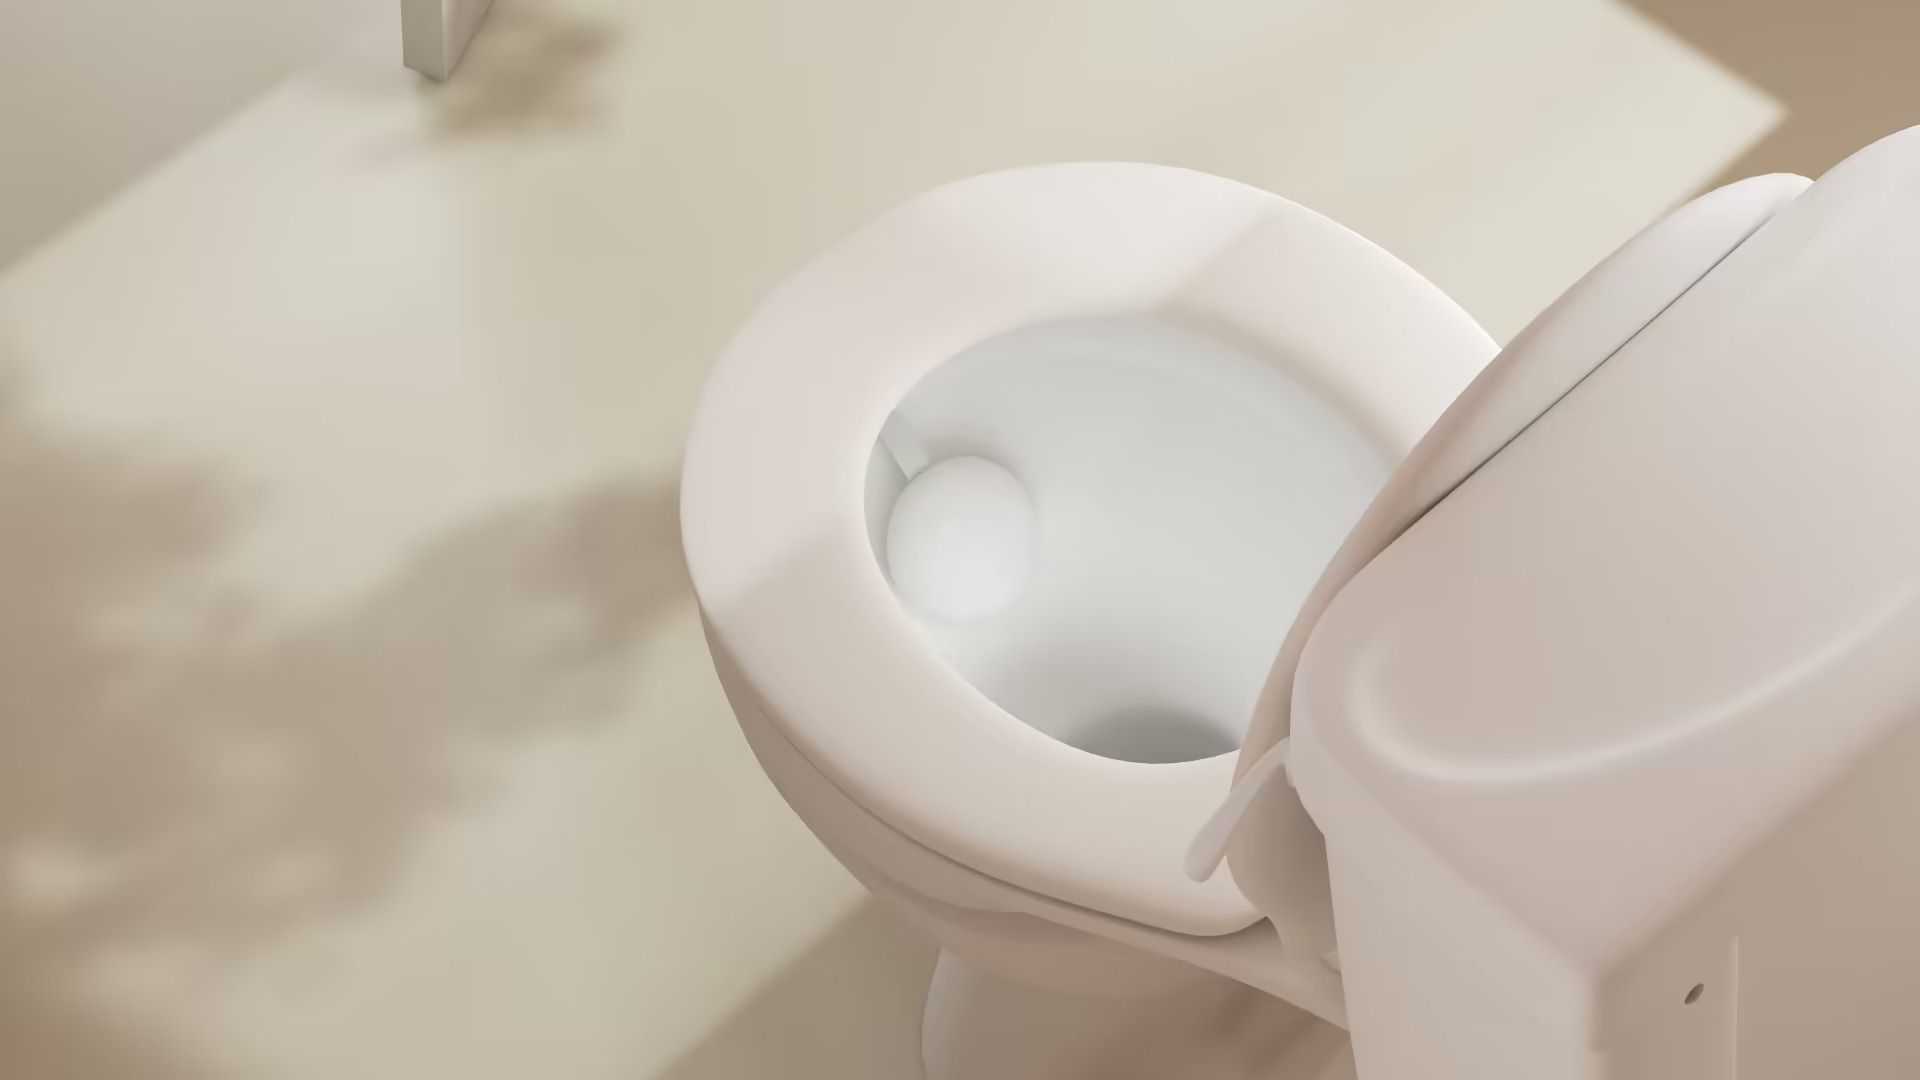 u-scan smart toilet